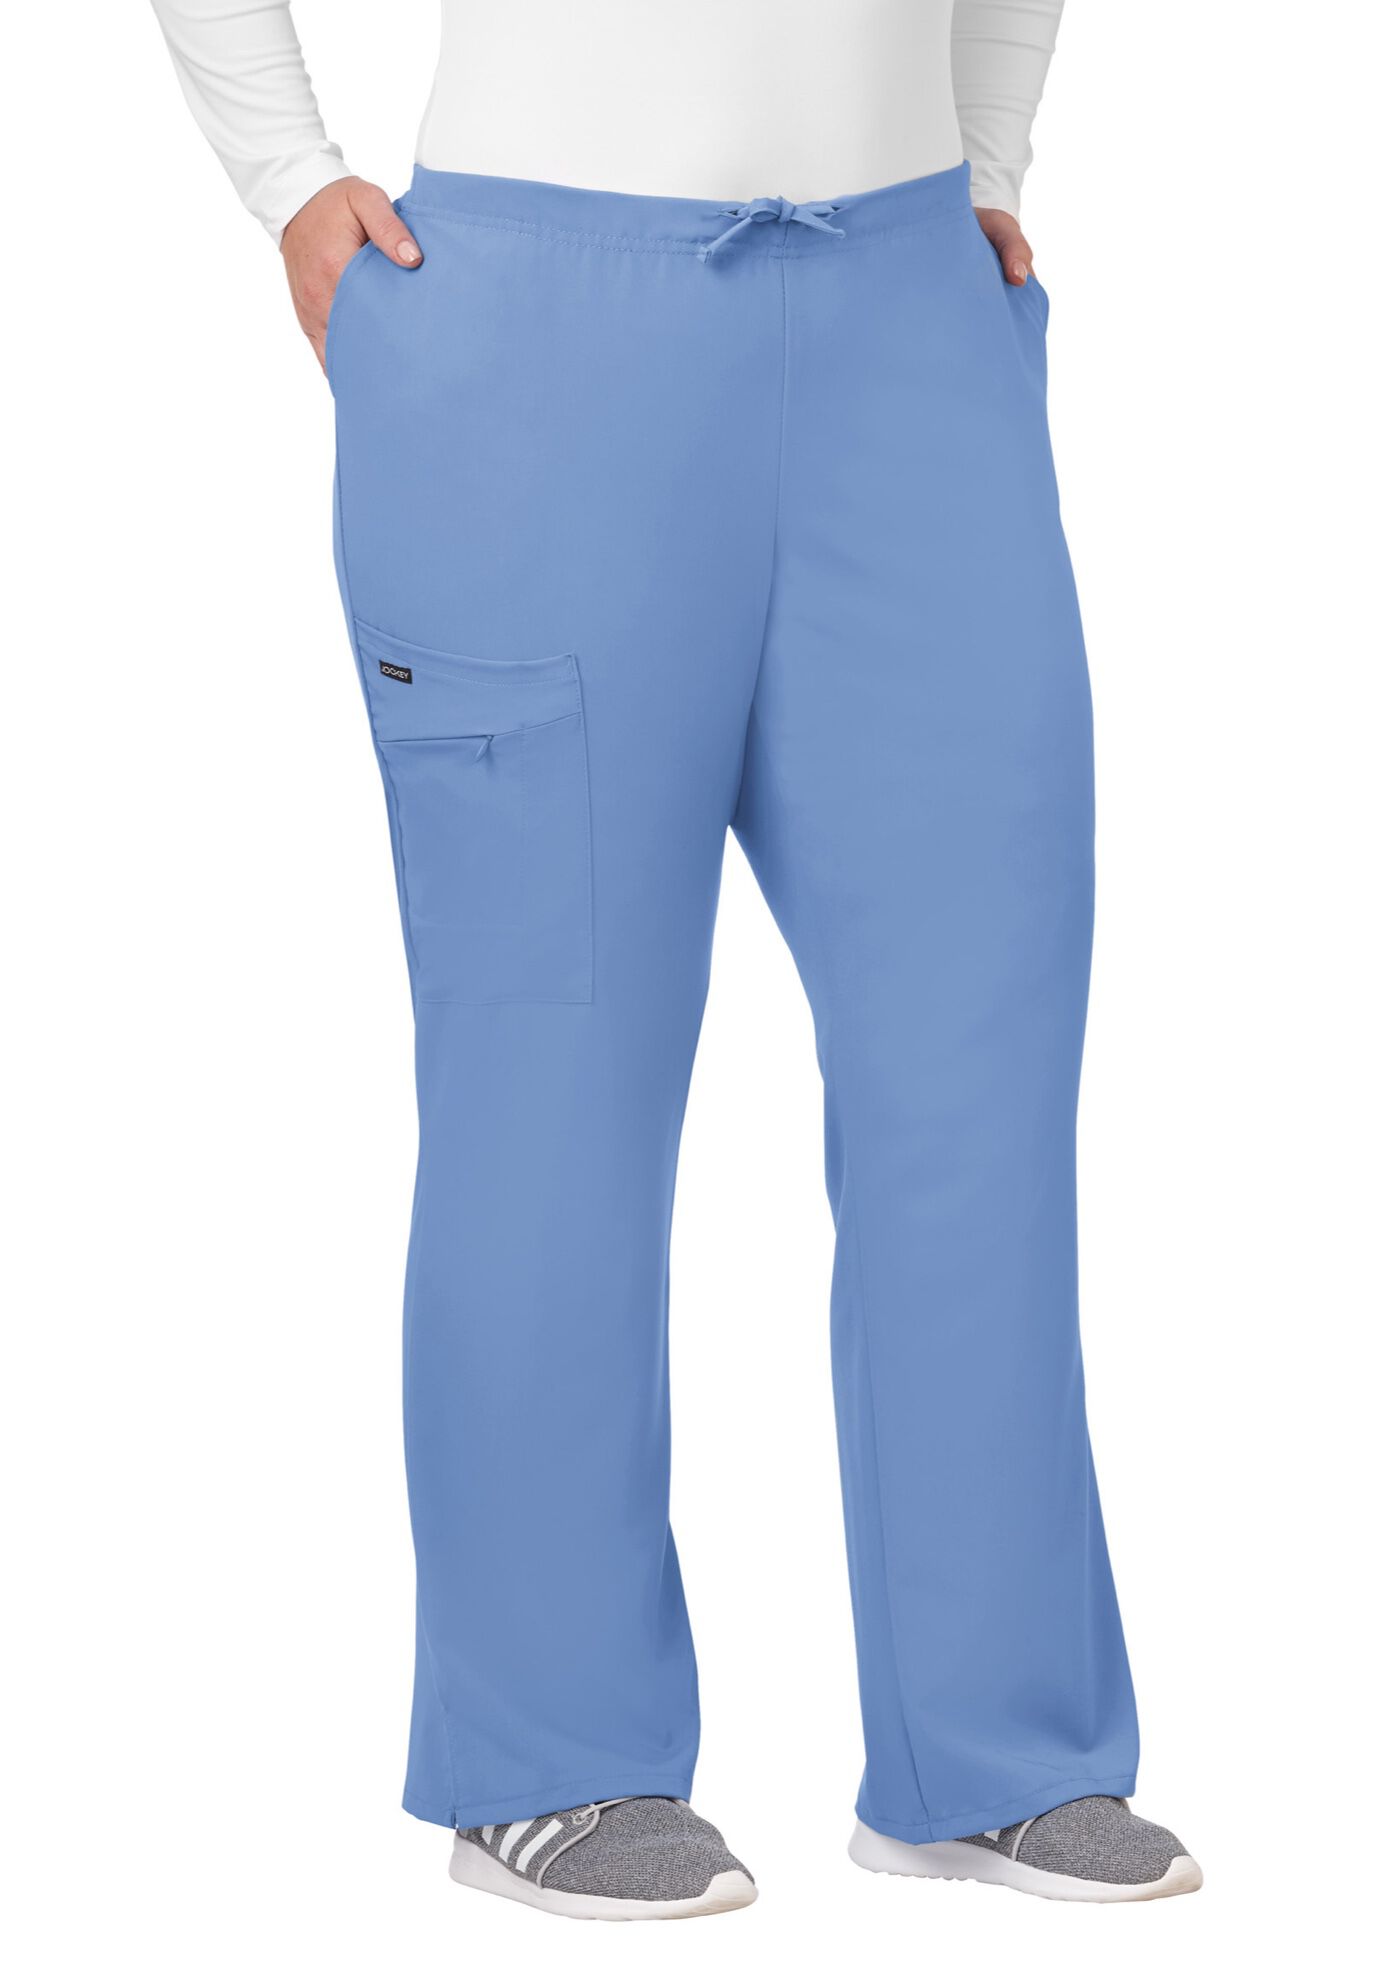 Plus Size Women's Jockey Scrubs Women's Favorite Fit Pant by Jockey Encompass Scrubs in Blue (Size LP(14P-16P))